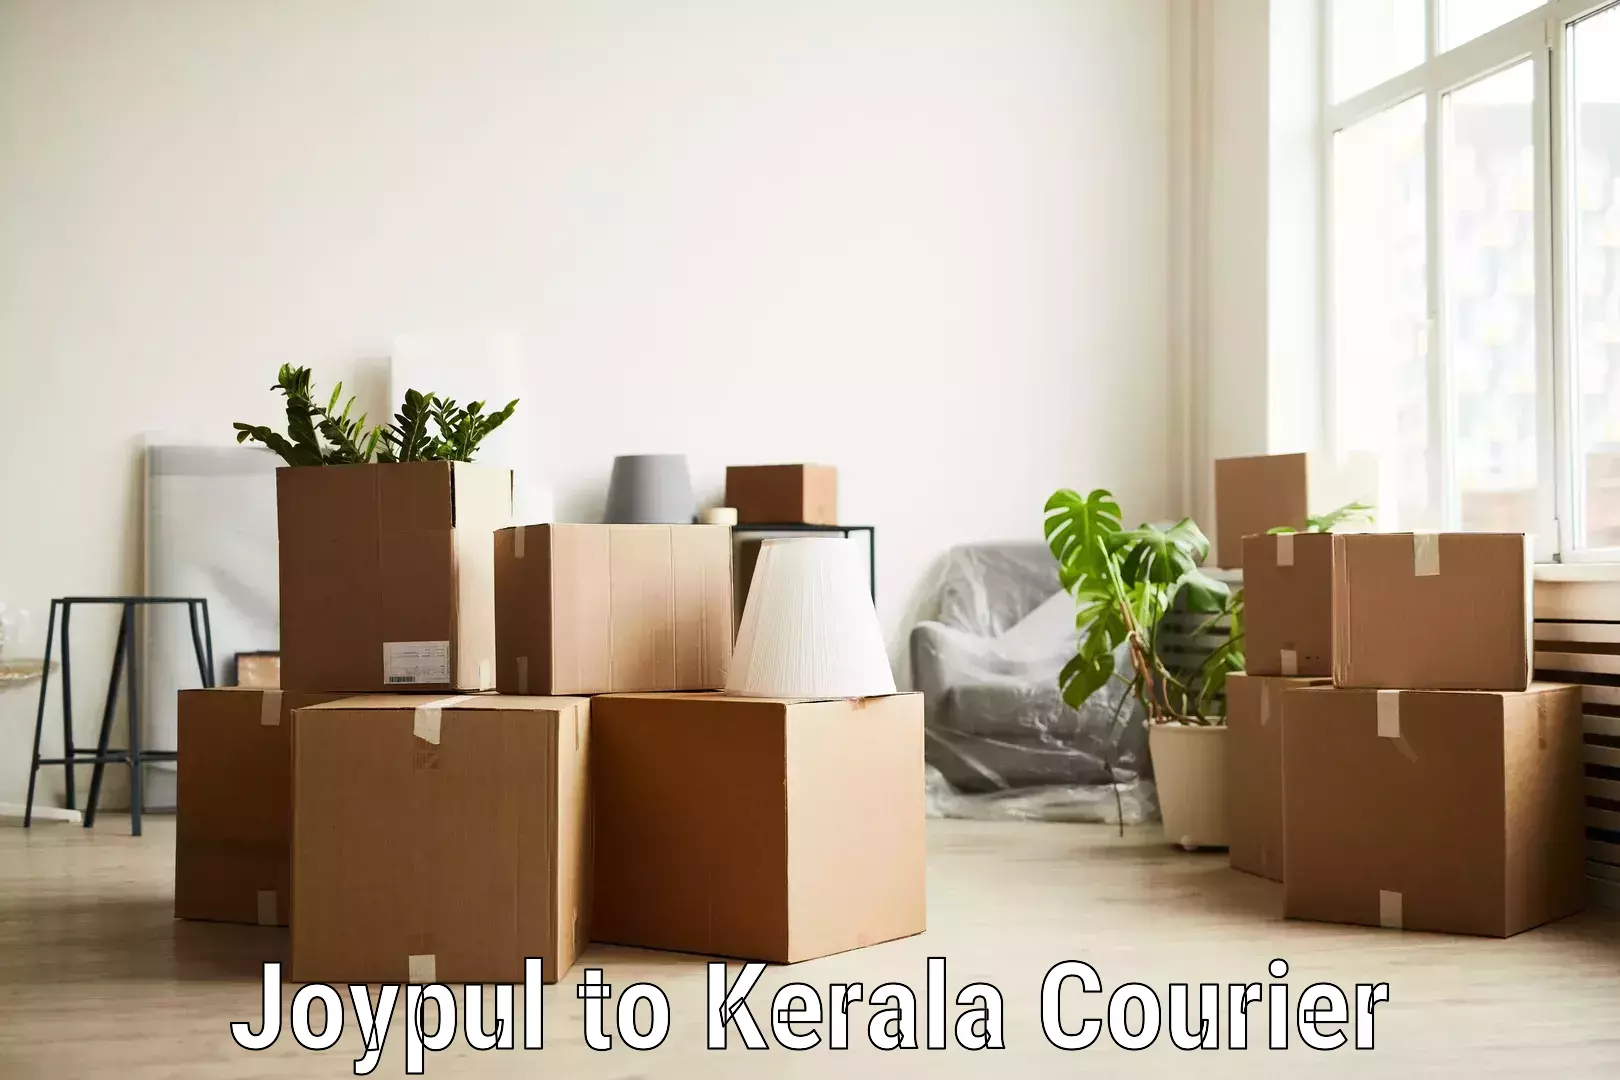 Comprehensive logistics solutions Joypul to Kerala